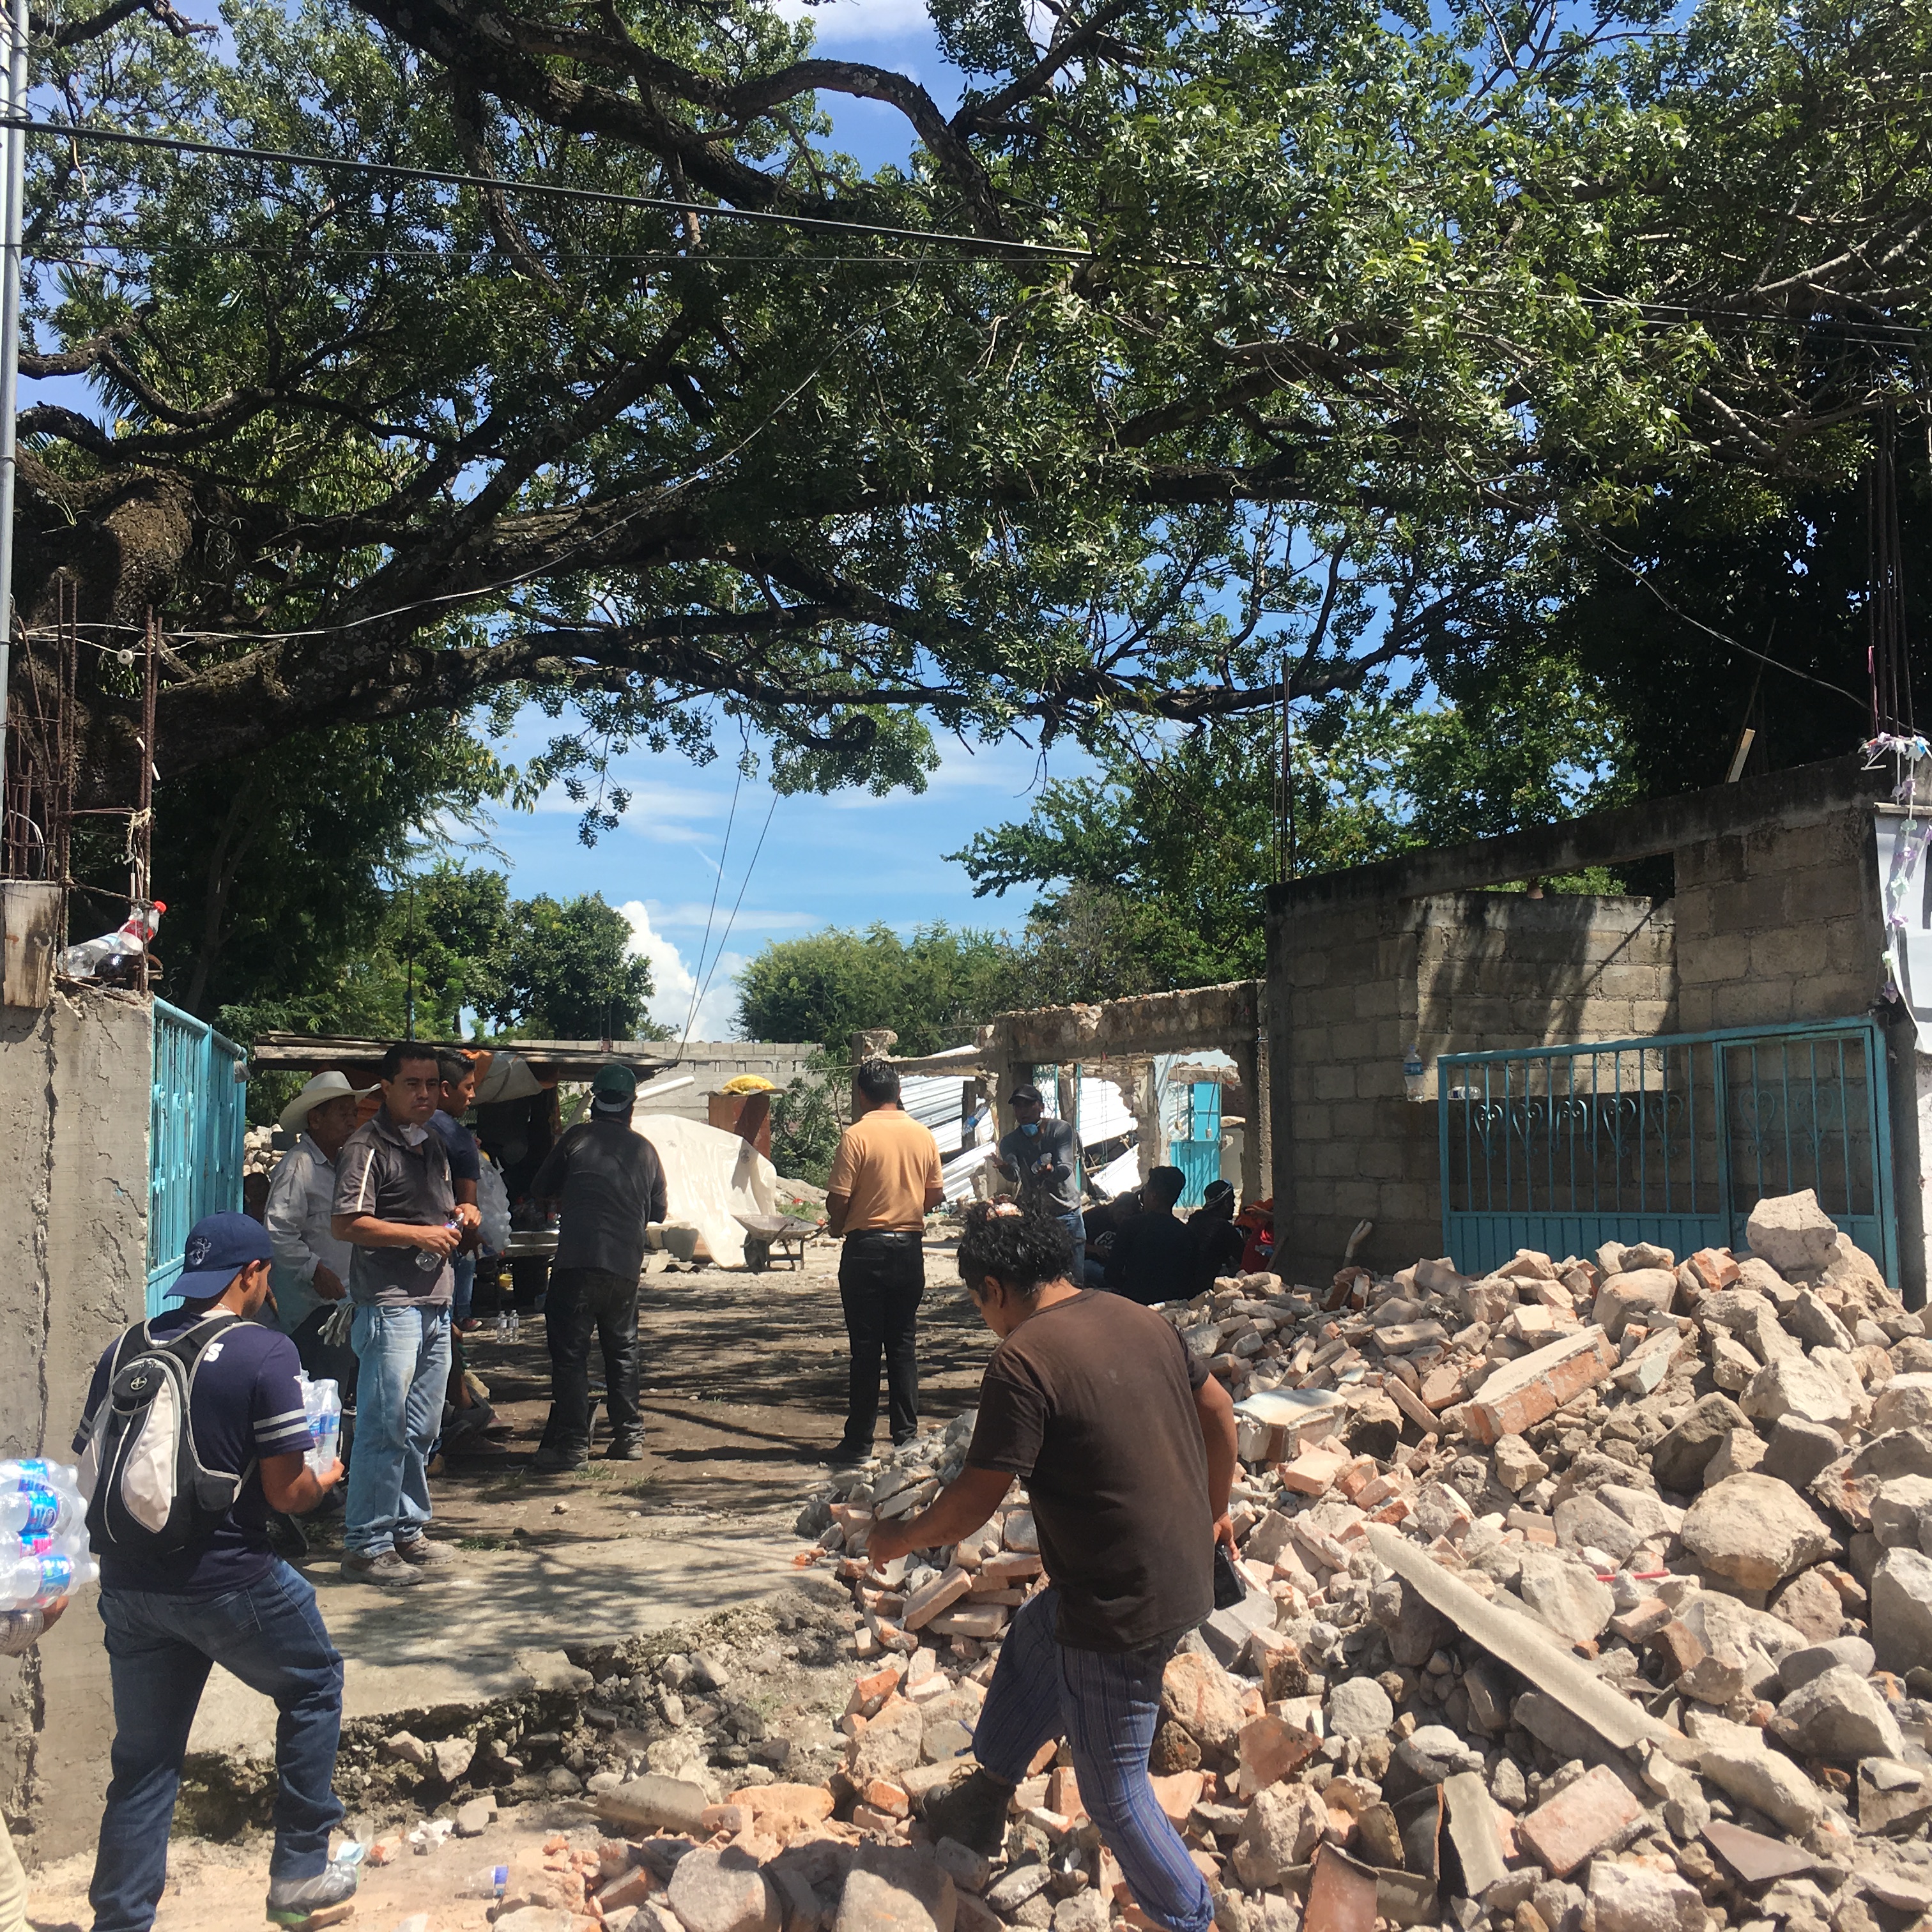 El 19 de septiembre, un sismo de magnitud 7,1 remeció de nueva cuenta la Ciudad de México –más común y entrañablemente conocida como el DeFectuoso, por las siglas de Distrito Federal.